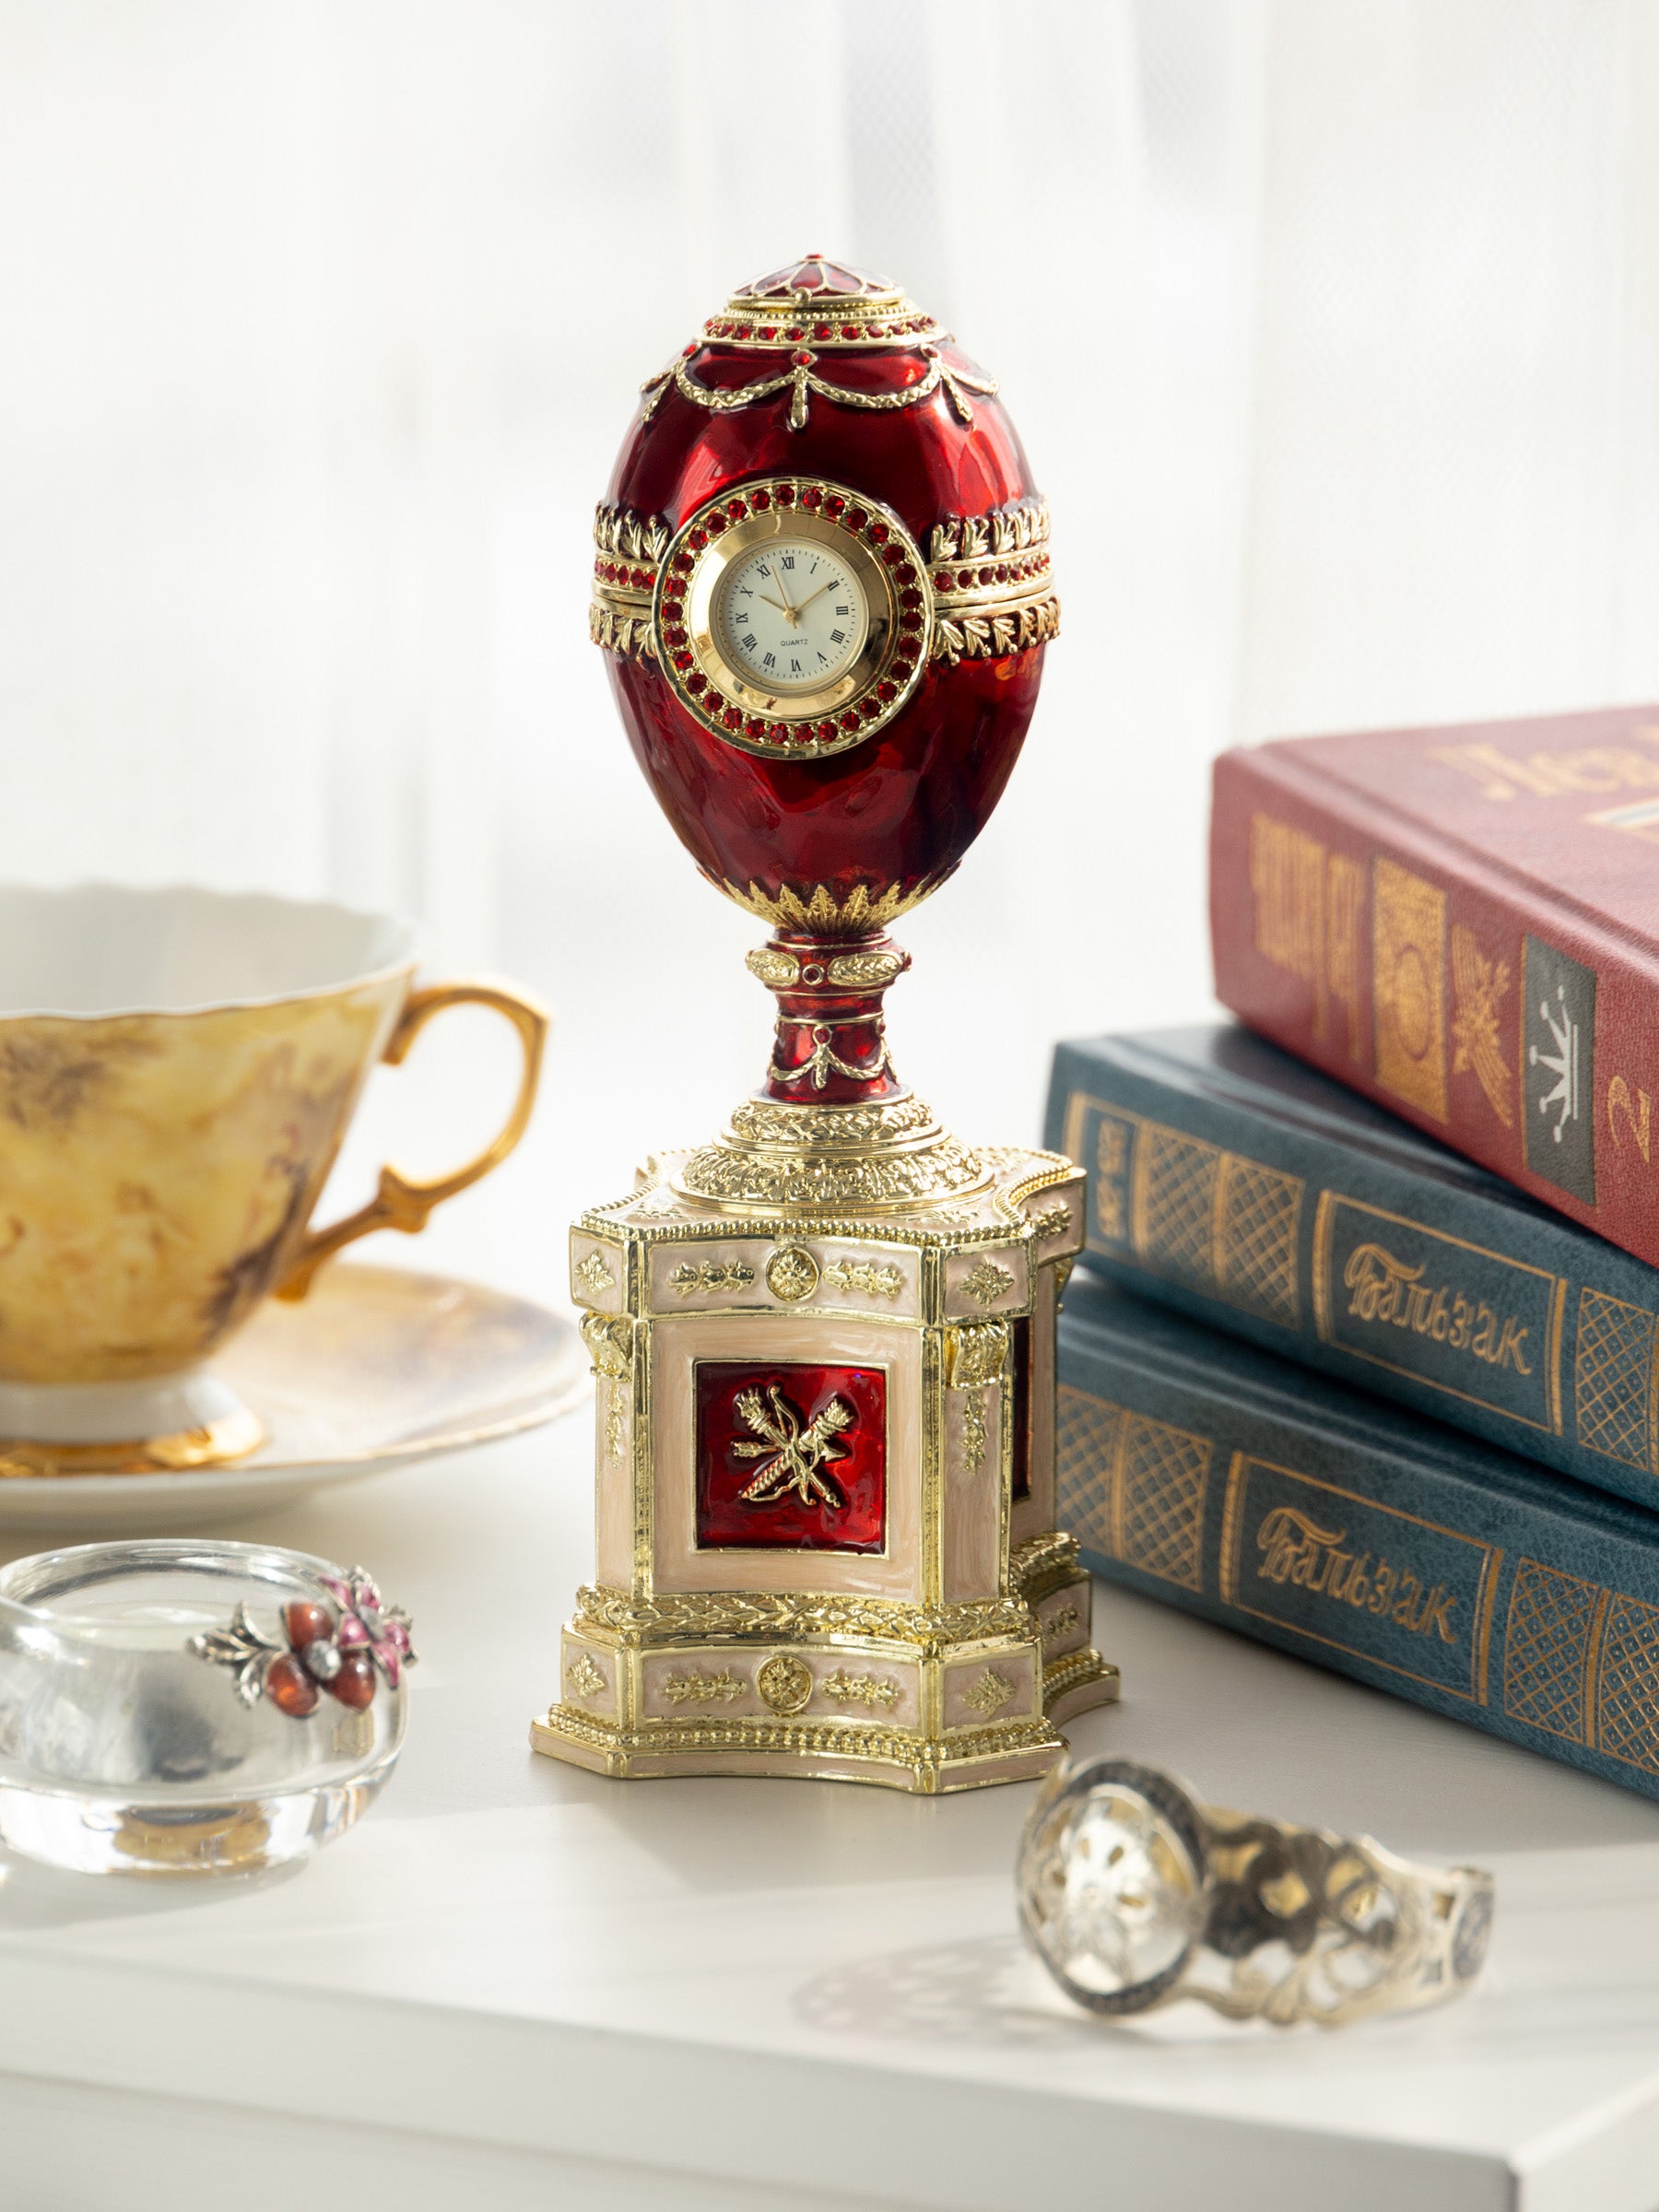 Rotes Fabergé-Ei mit einer Perle und einer Uhr